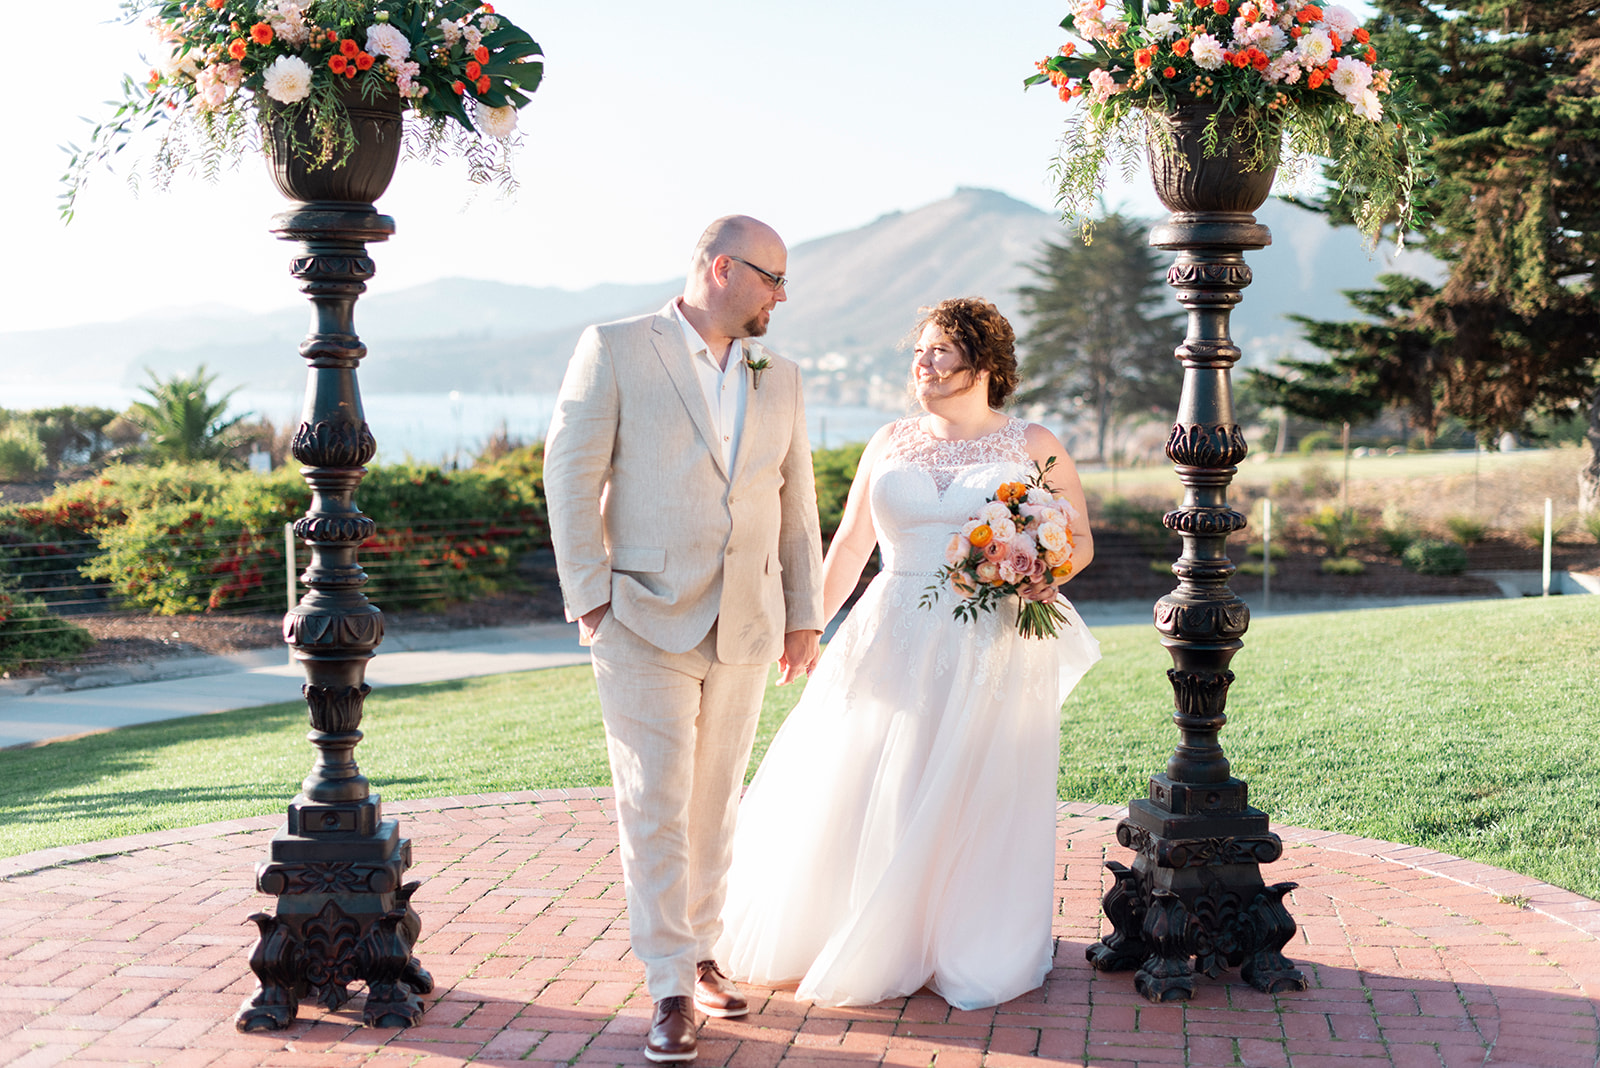 Bride and Groom at Cliffs Hotel by Pismo Beach Wedding Photographer Kirsten Bullard